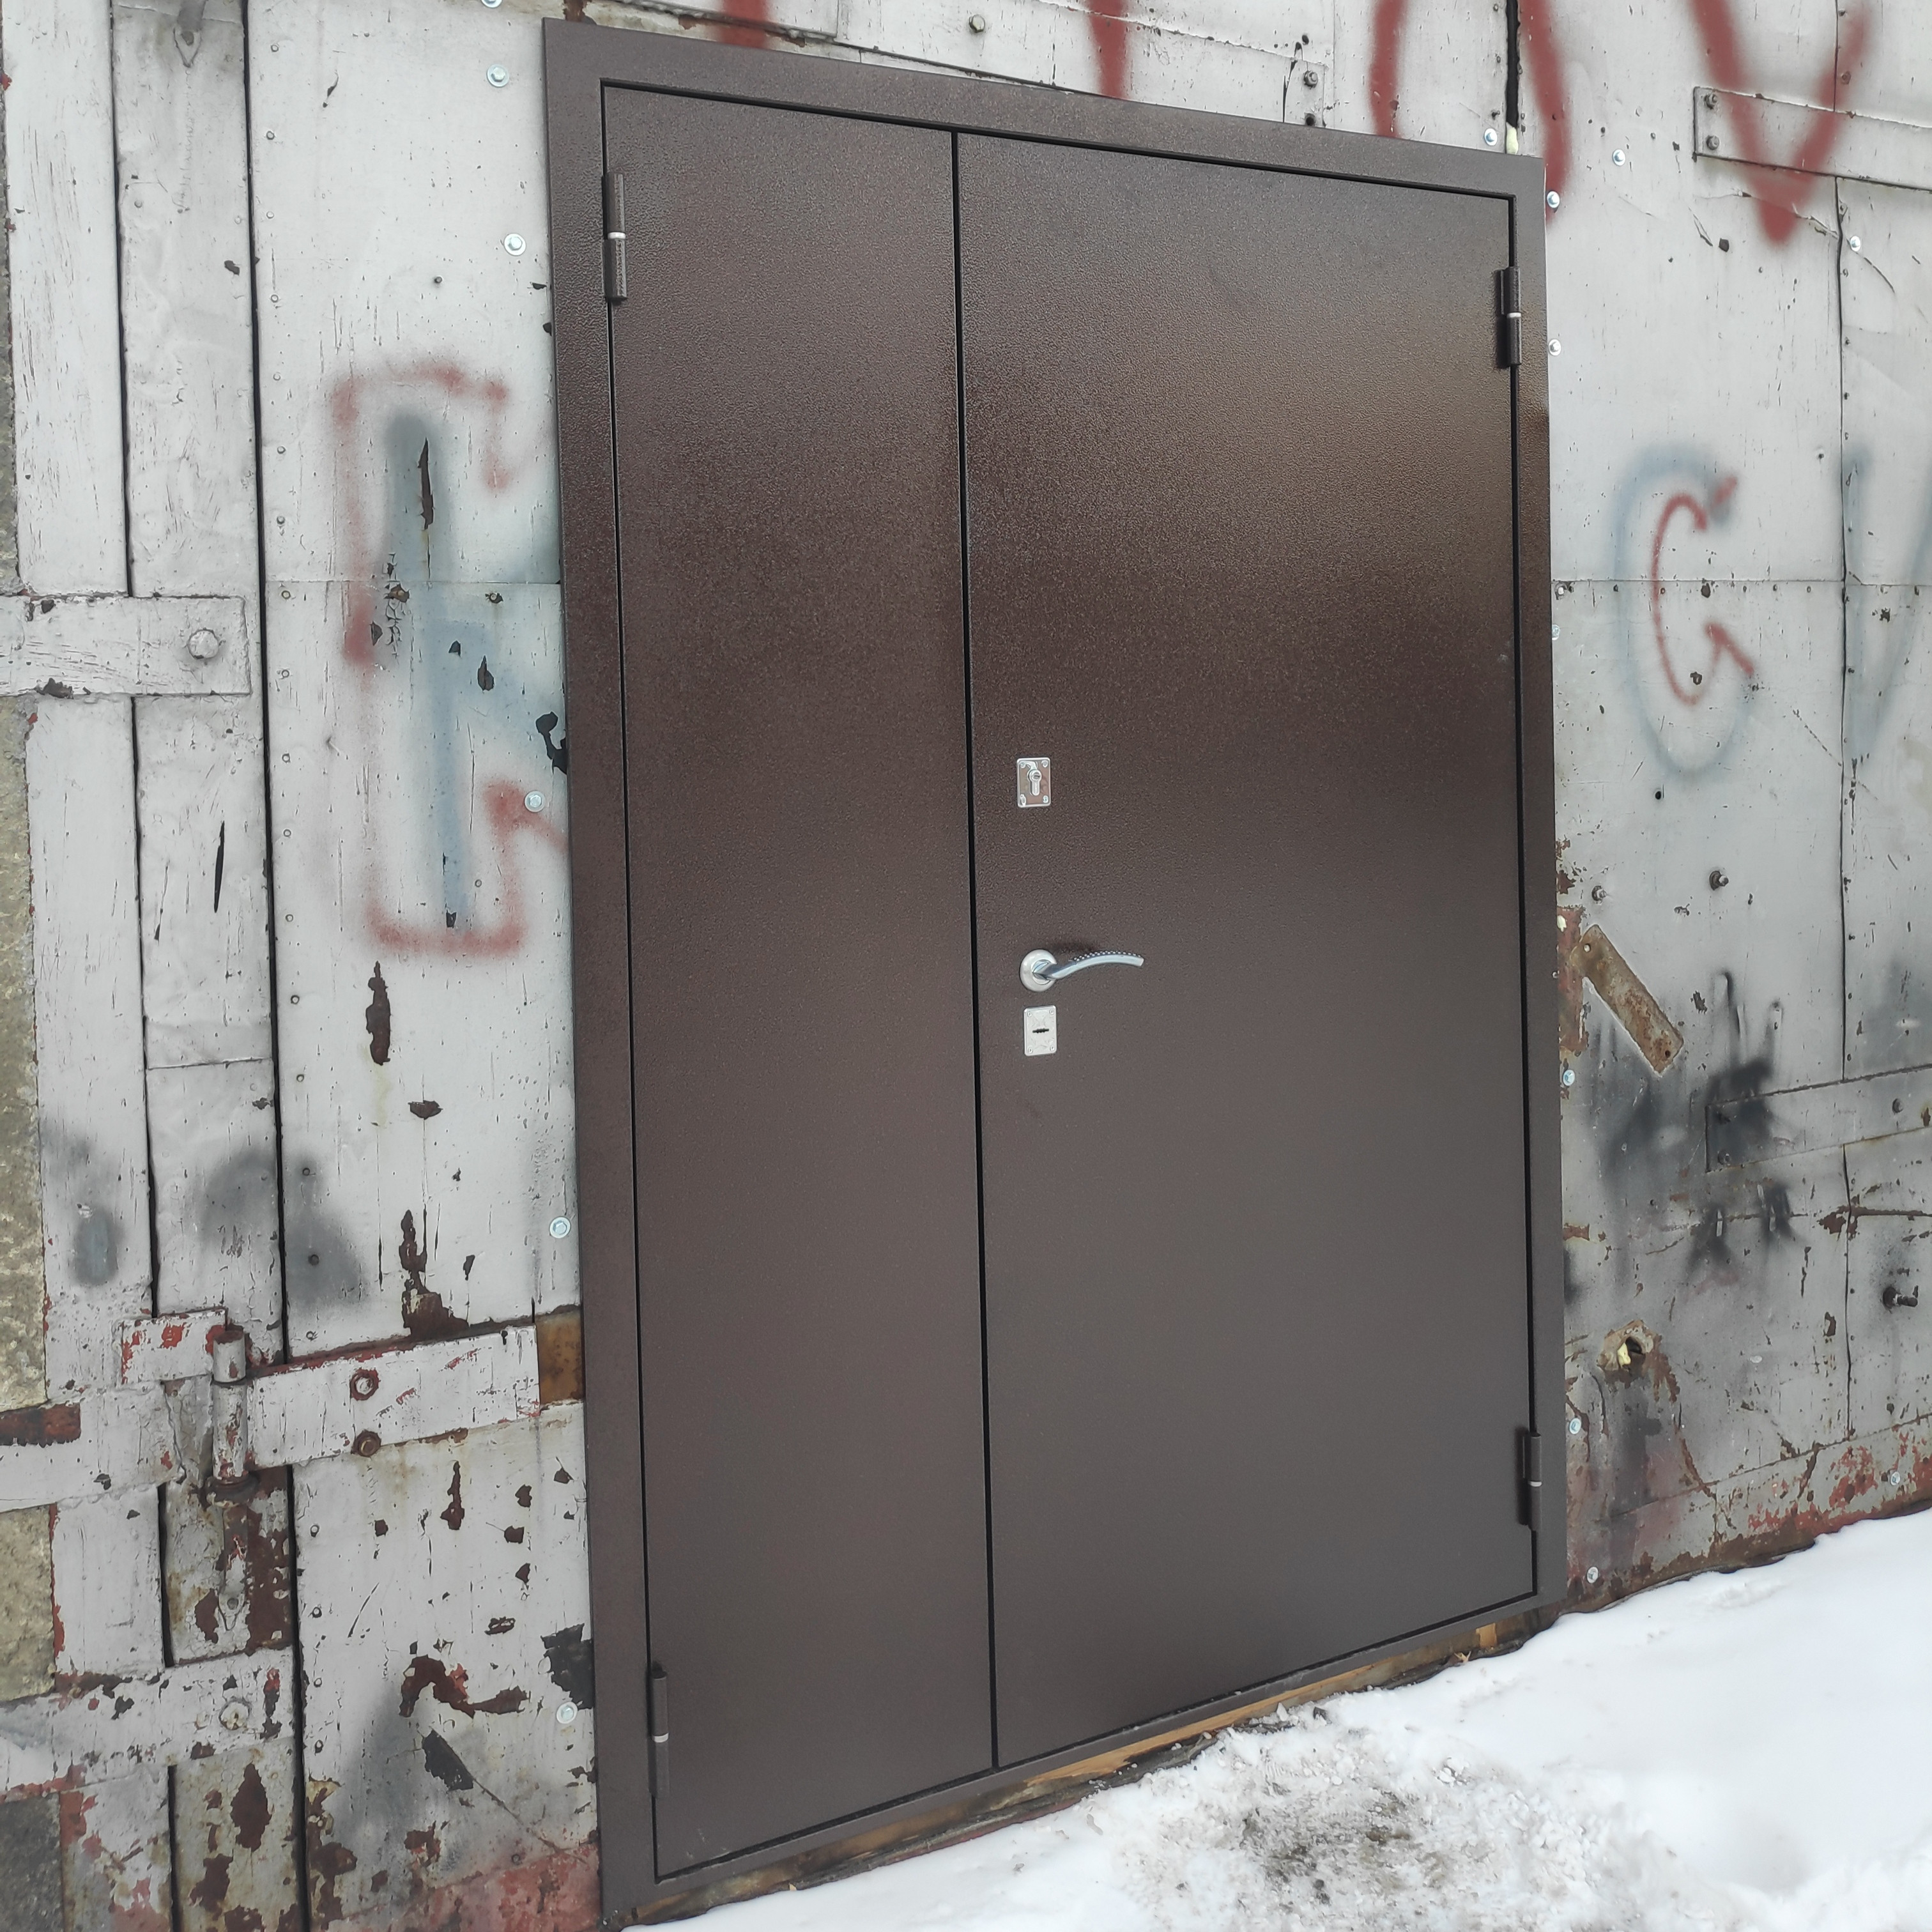 Купить металлическую дверь в ярославле. Завод металлических дверей. Дверь стальная для вентиляционных камер утепленная. Ярославский завод металлических дверей. Td-731 дверь металлическая.